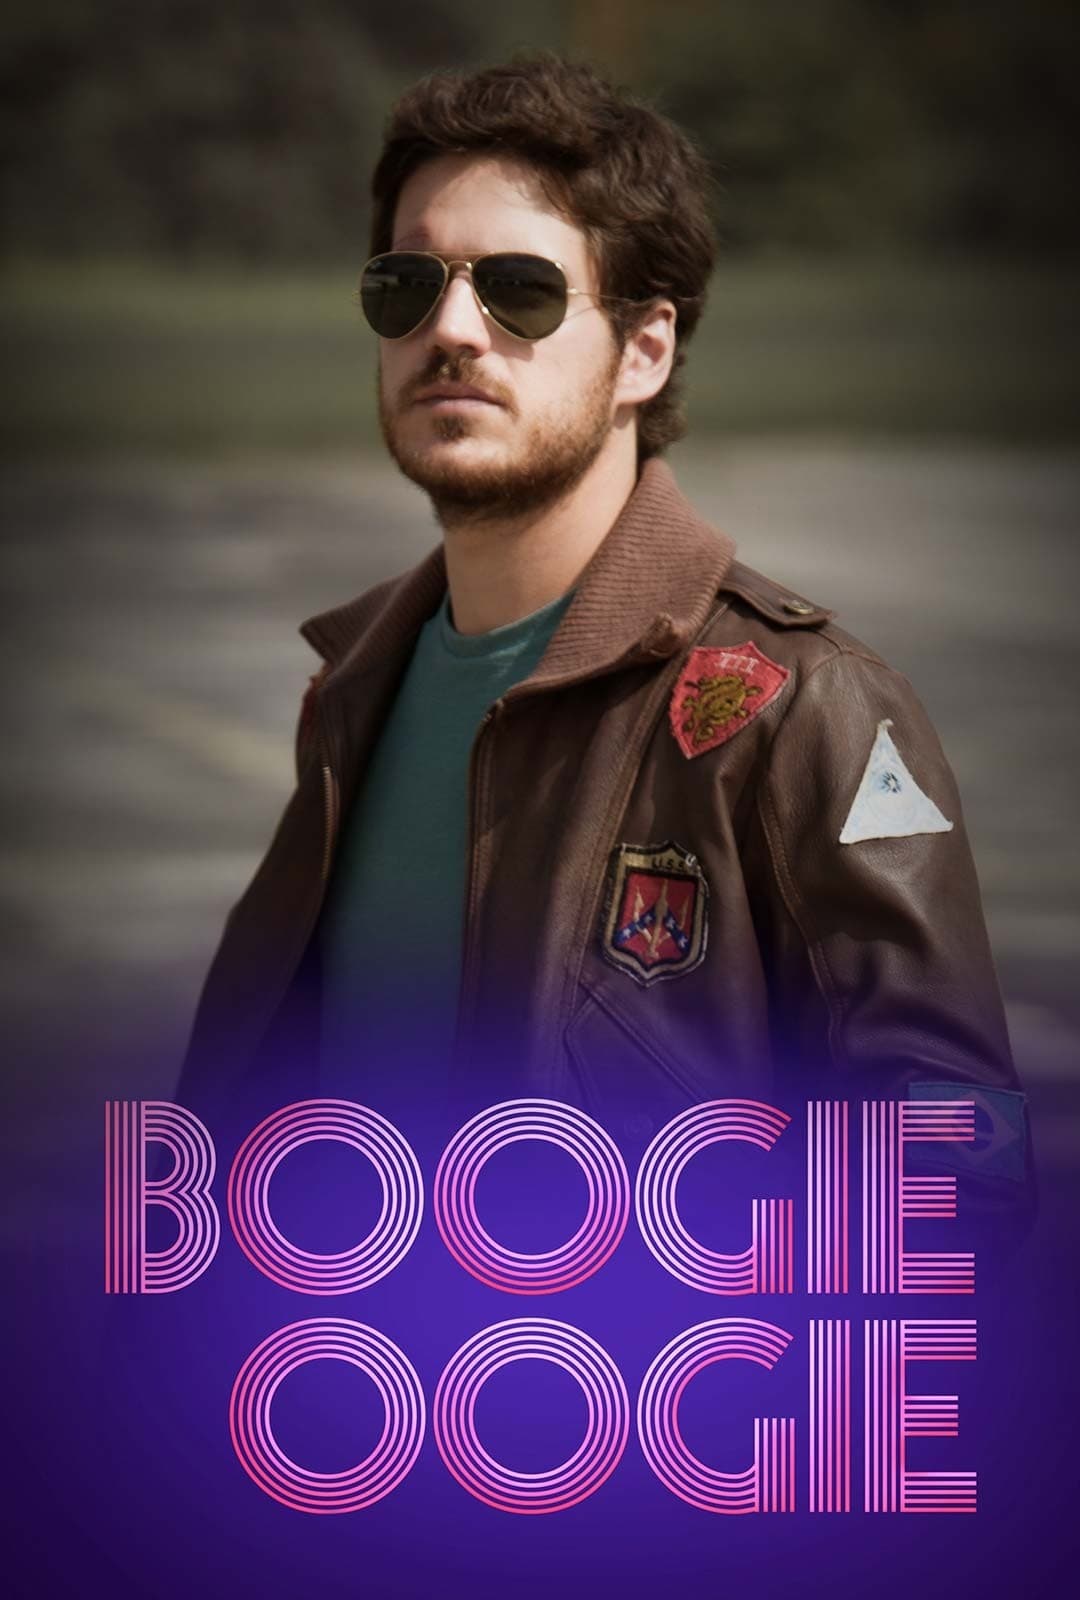 Boogie Oogie (2014)